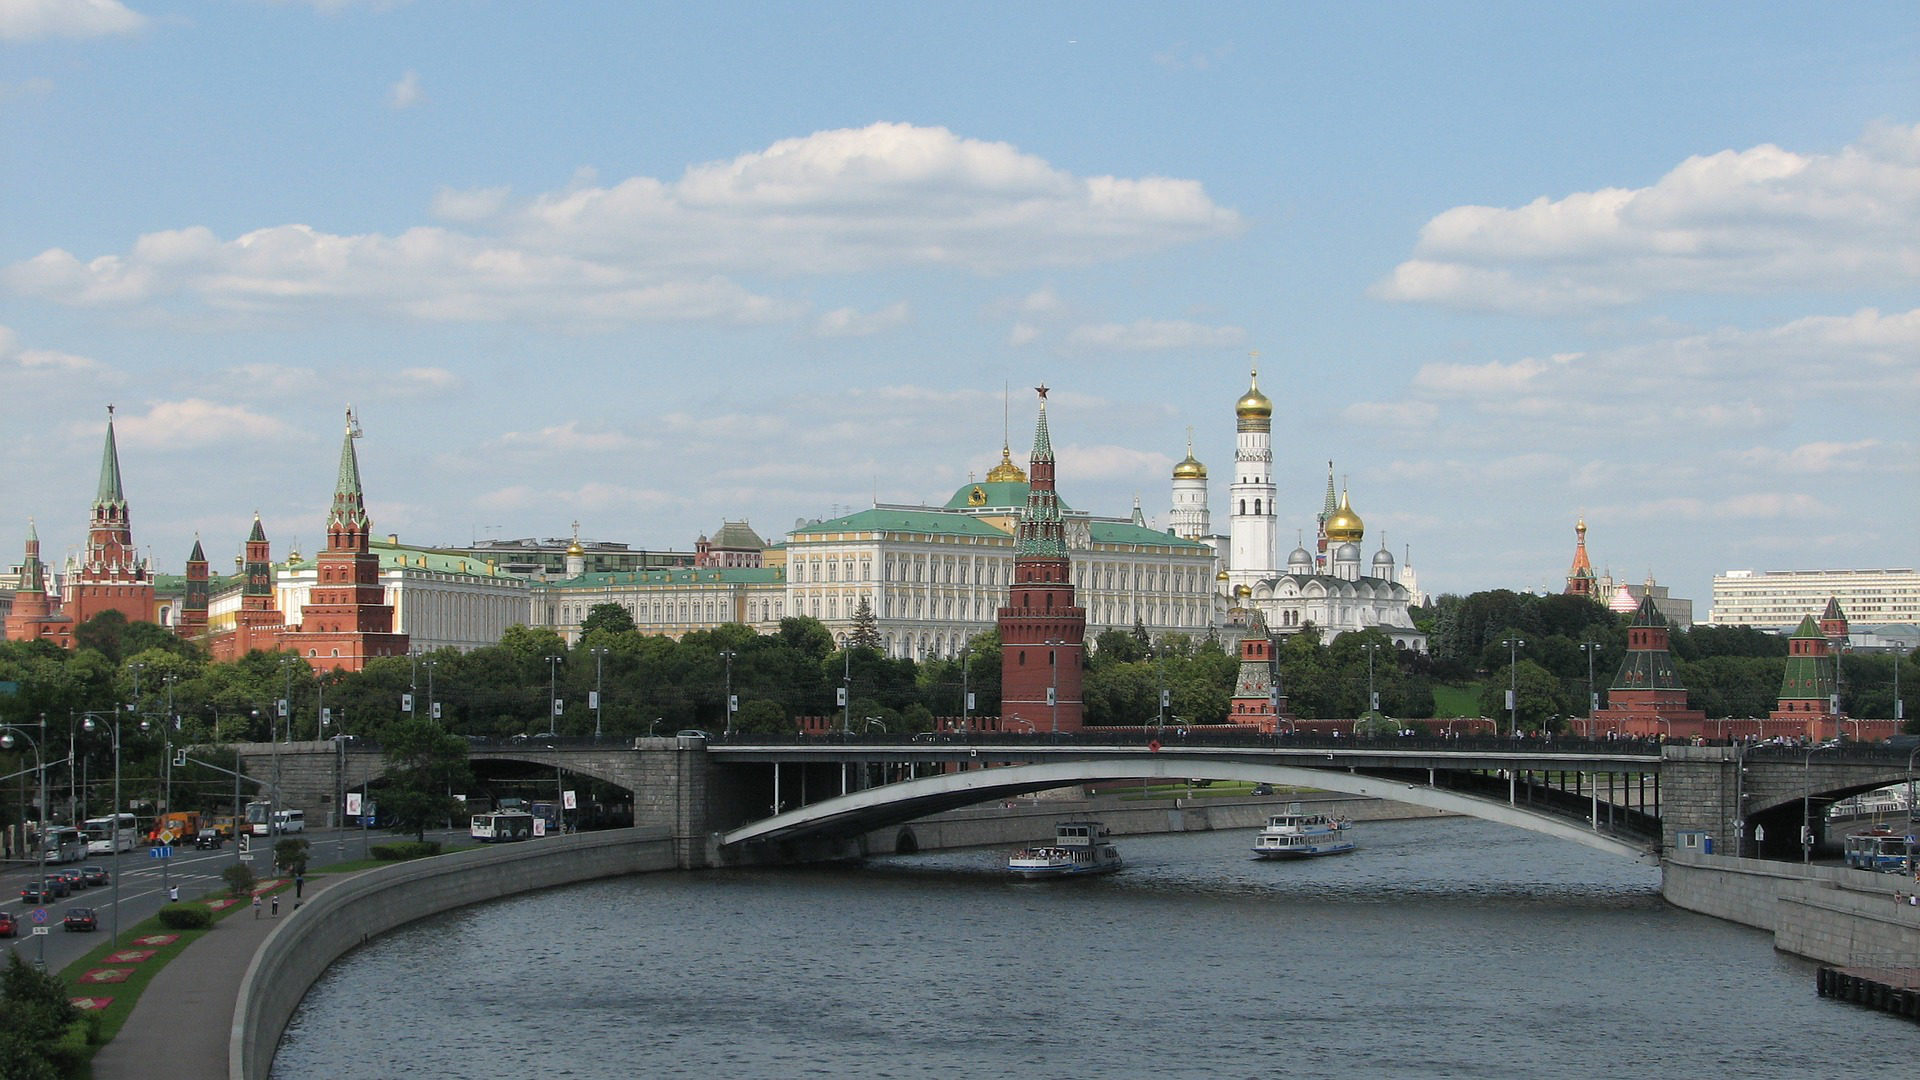 Der Kreml in Moskau.